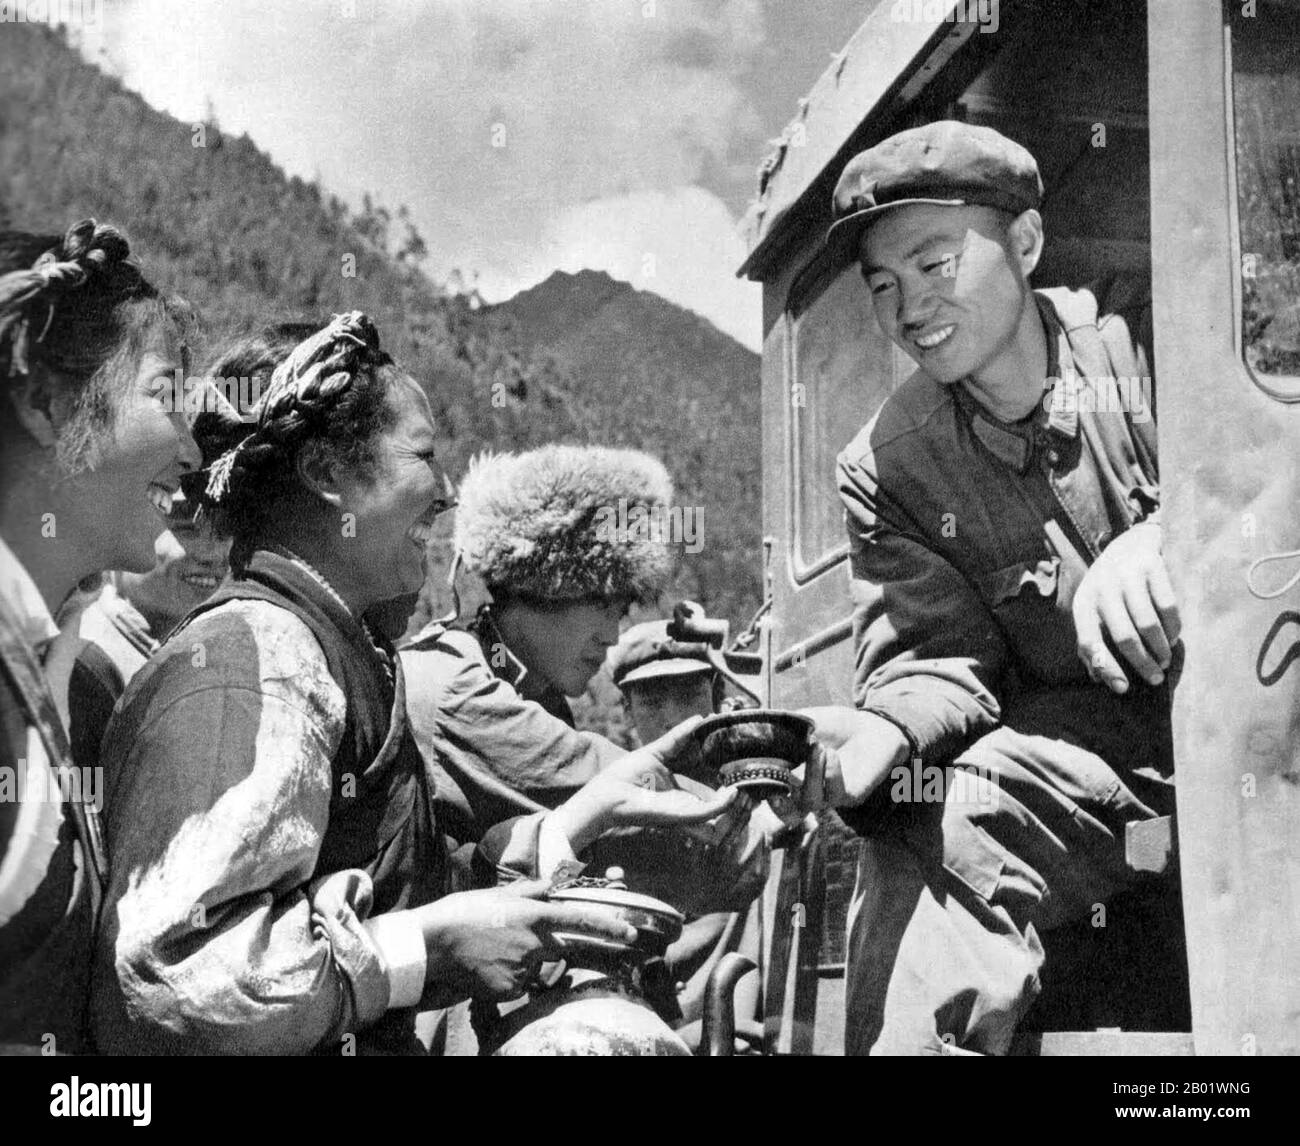 Chine/Tibet : image de propagande chinoise de tibétains heureux offrant du thé au beurre à un chauffeur de tracteur de l'Armée populaire de libération des Han (APL) à l'époque de la Grande Révolution culturelle prolétarienne (1966-1976). La route des chevaux de thé (Cha ma Dao) était un réseau de chemins de caravanes muledoles serpentant à travers les montagnes du Yunnan, du Sichuan et du Tibet dans le sud-ouest de la Chine. Elle est également parfois appelée route de la soie du Sud et ancienne route du thé et du cheval. Il y a environ mille ans, l'ancienne route du thé était un lien commercial entre le Yunnan, l'une des premières régions productrices de thé, et l'Inde via la Birmanie. Banque D'Images